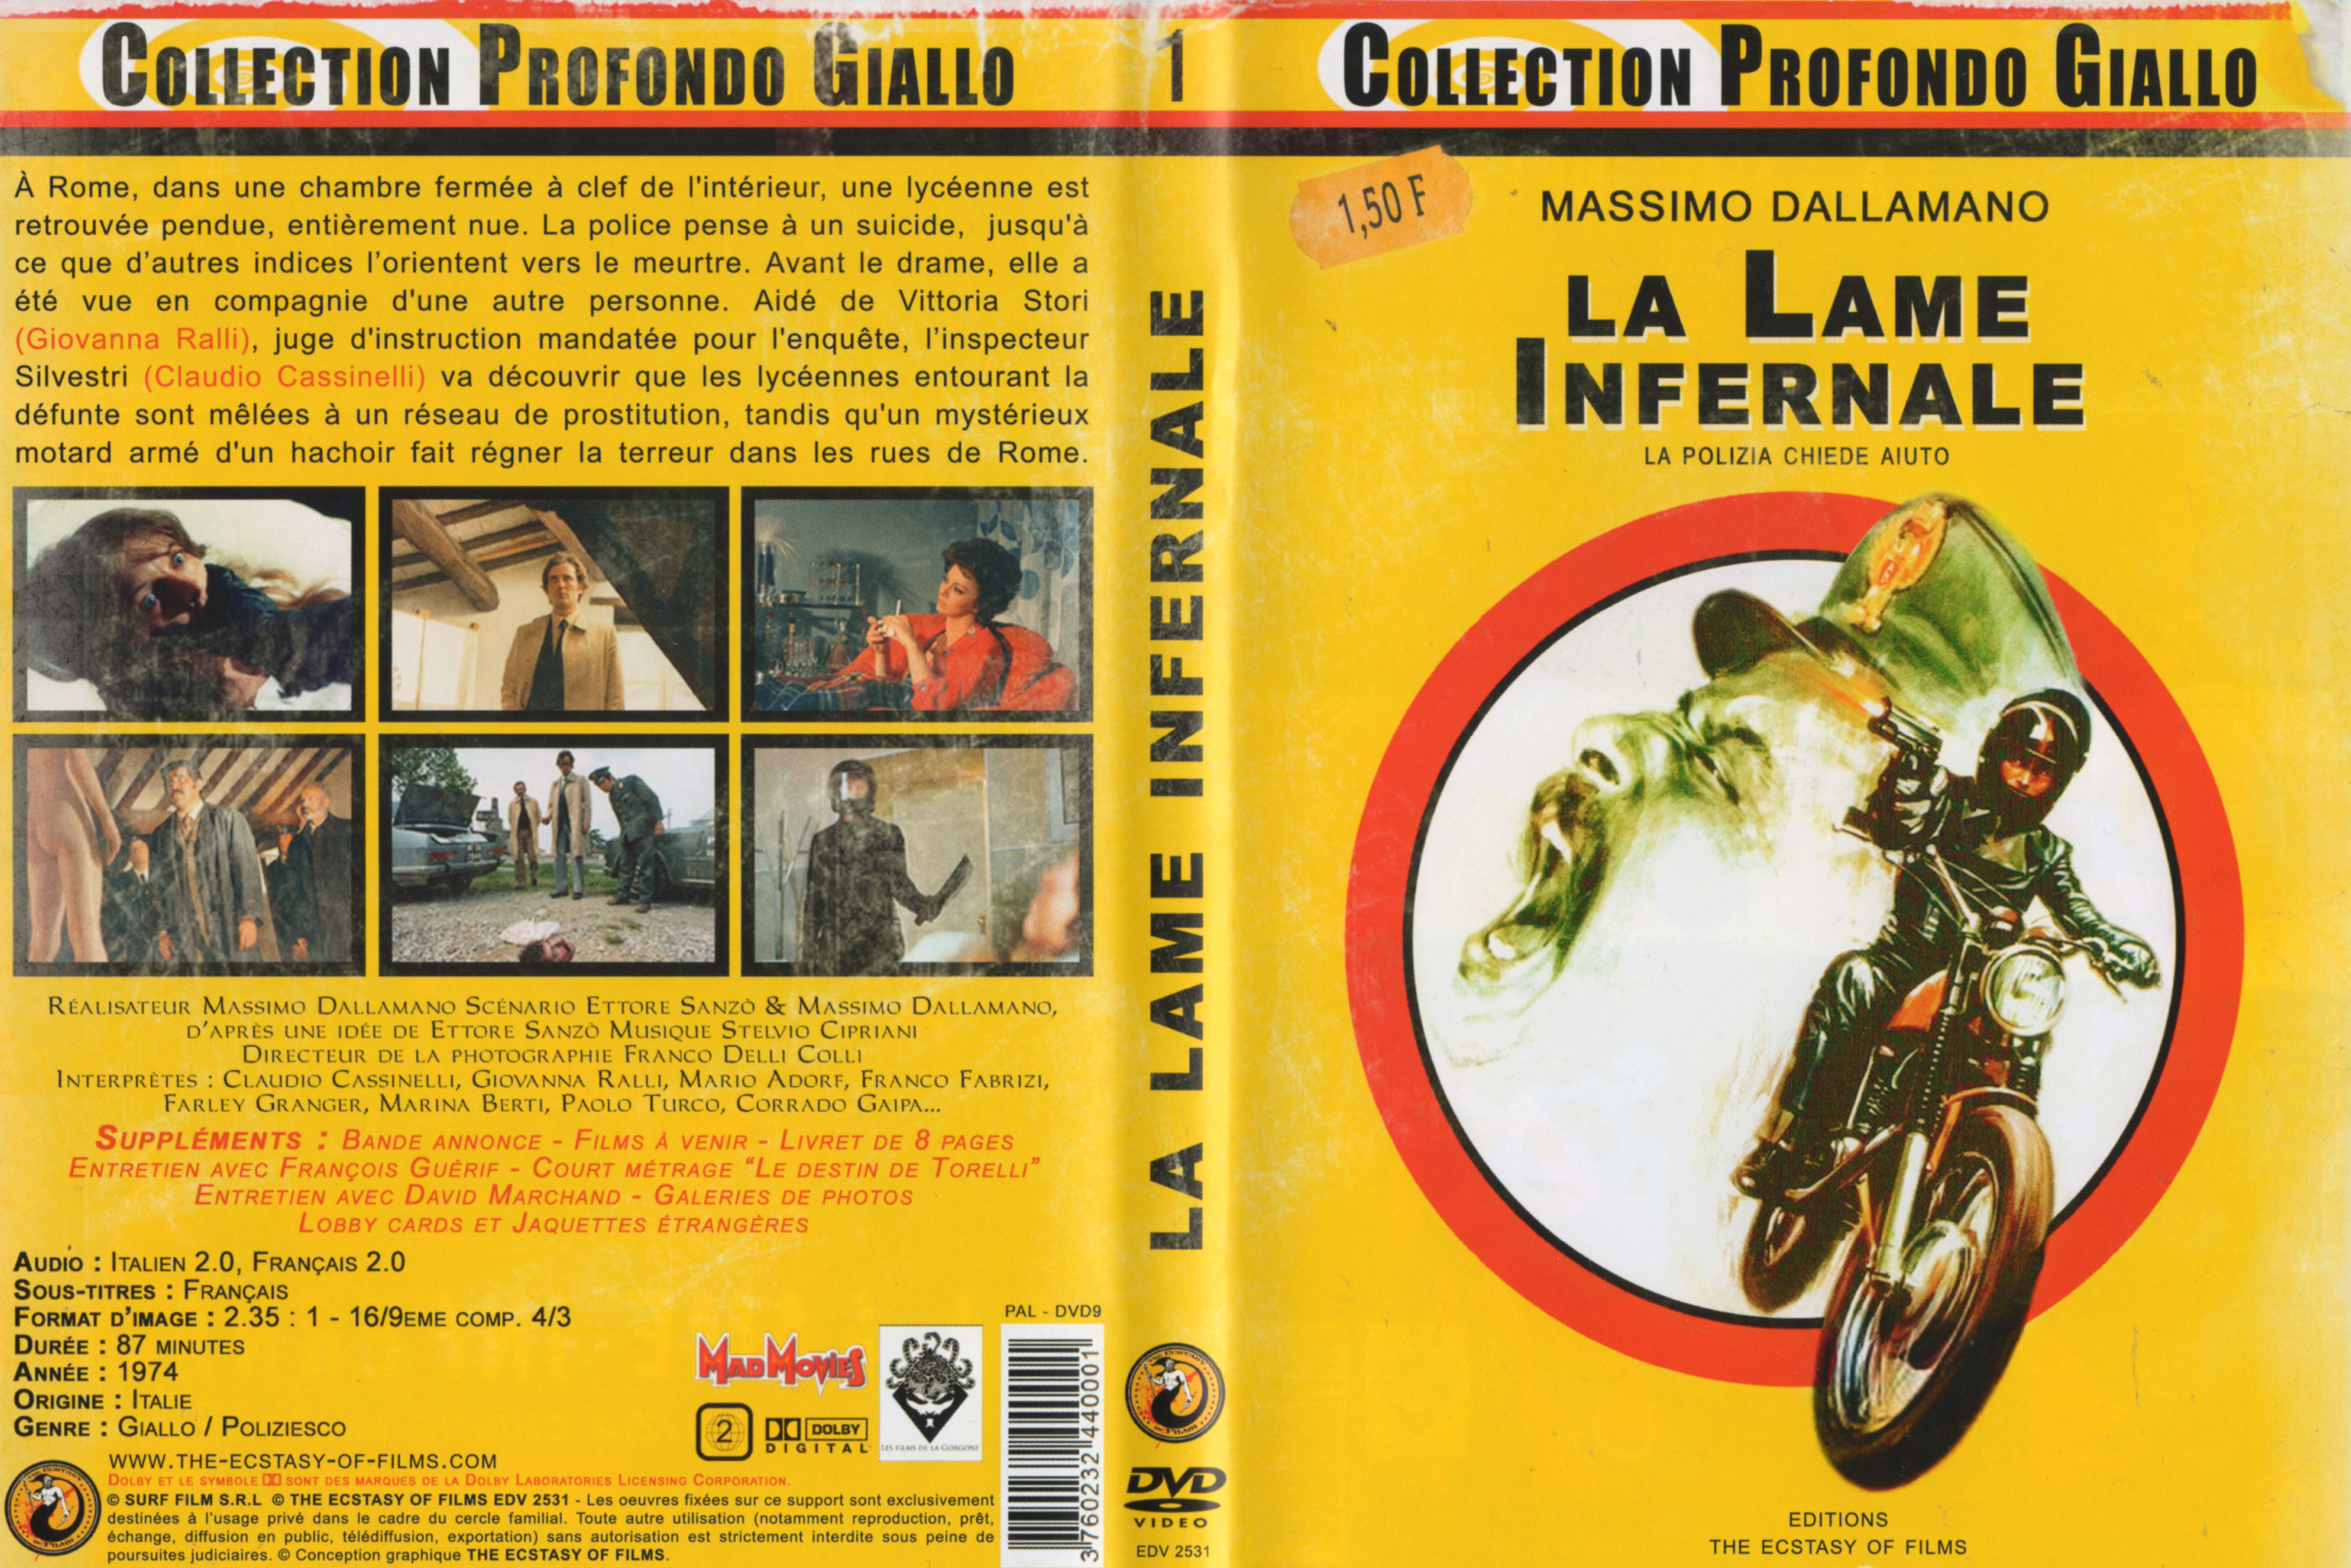 Jaquette DVD La lame infernale v2